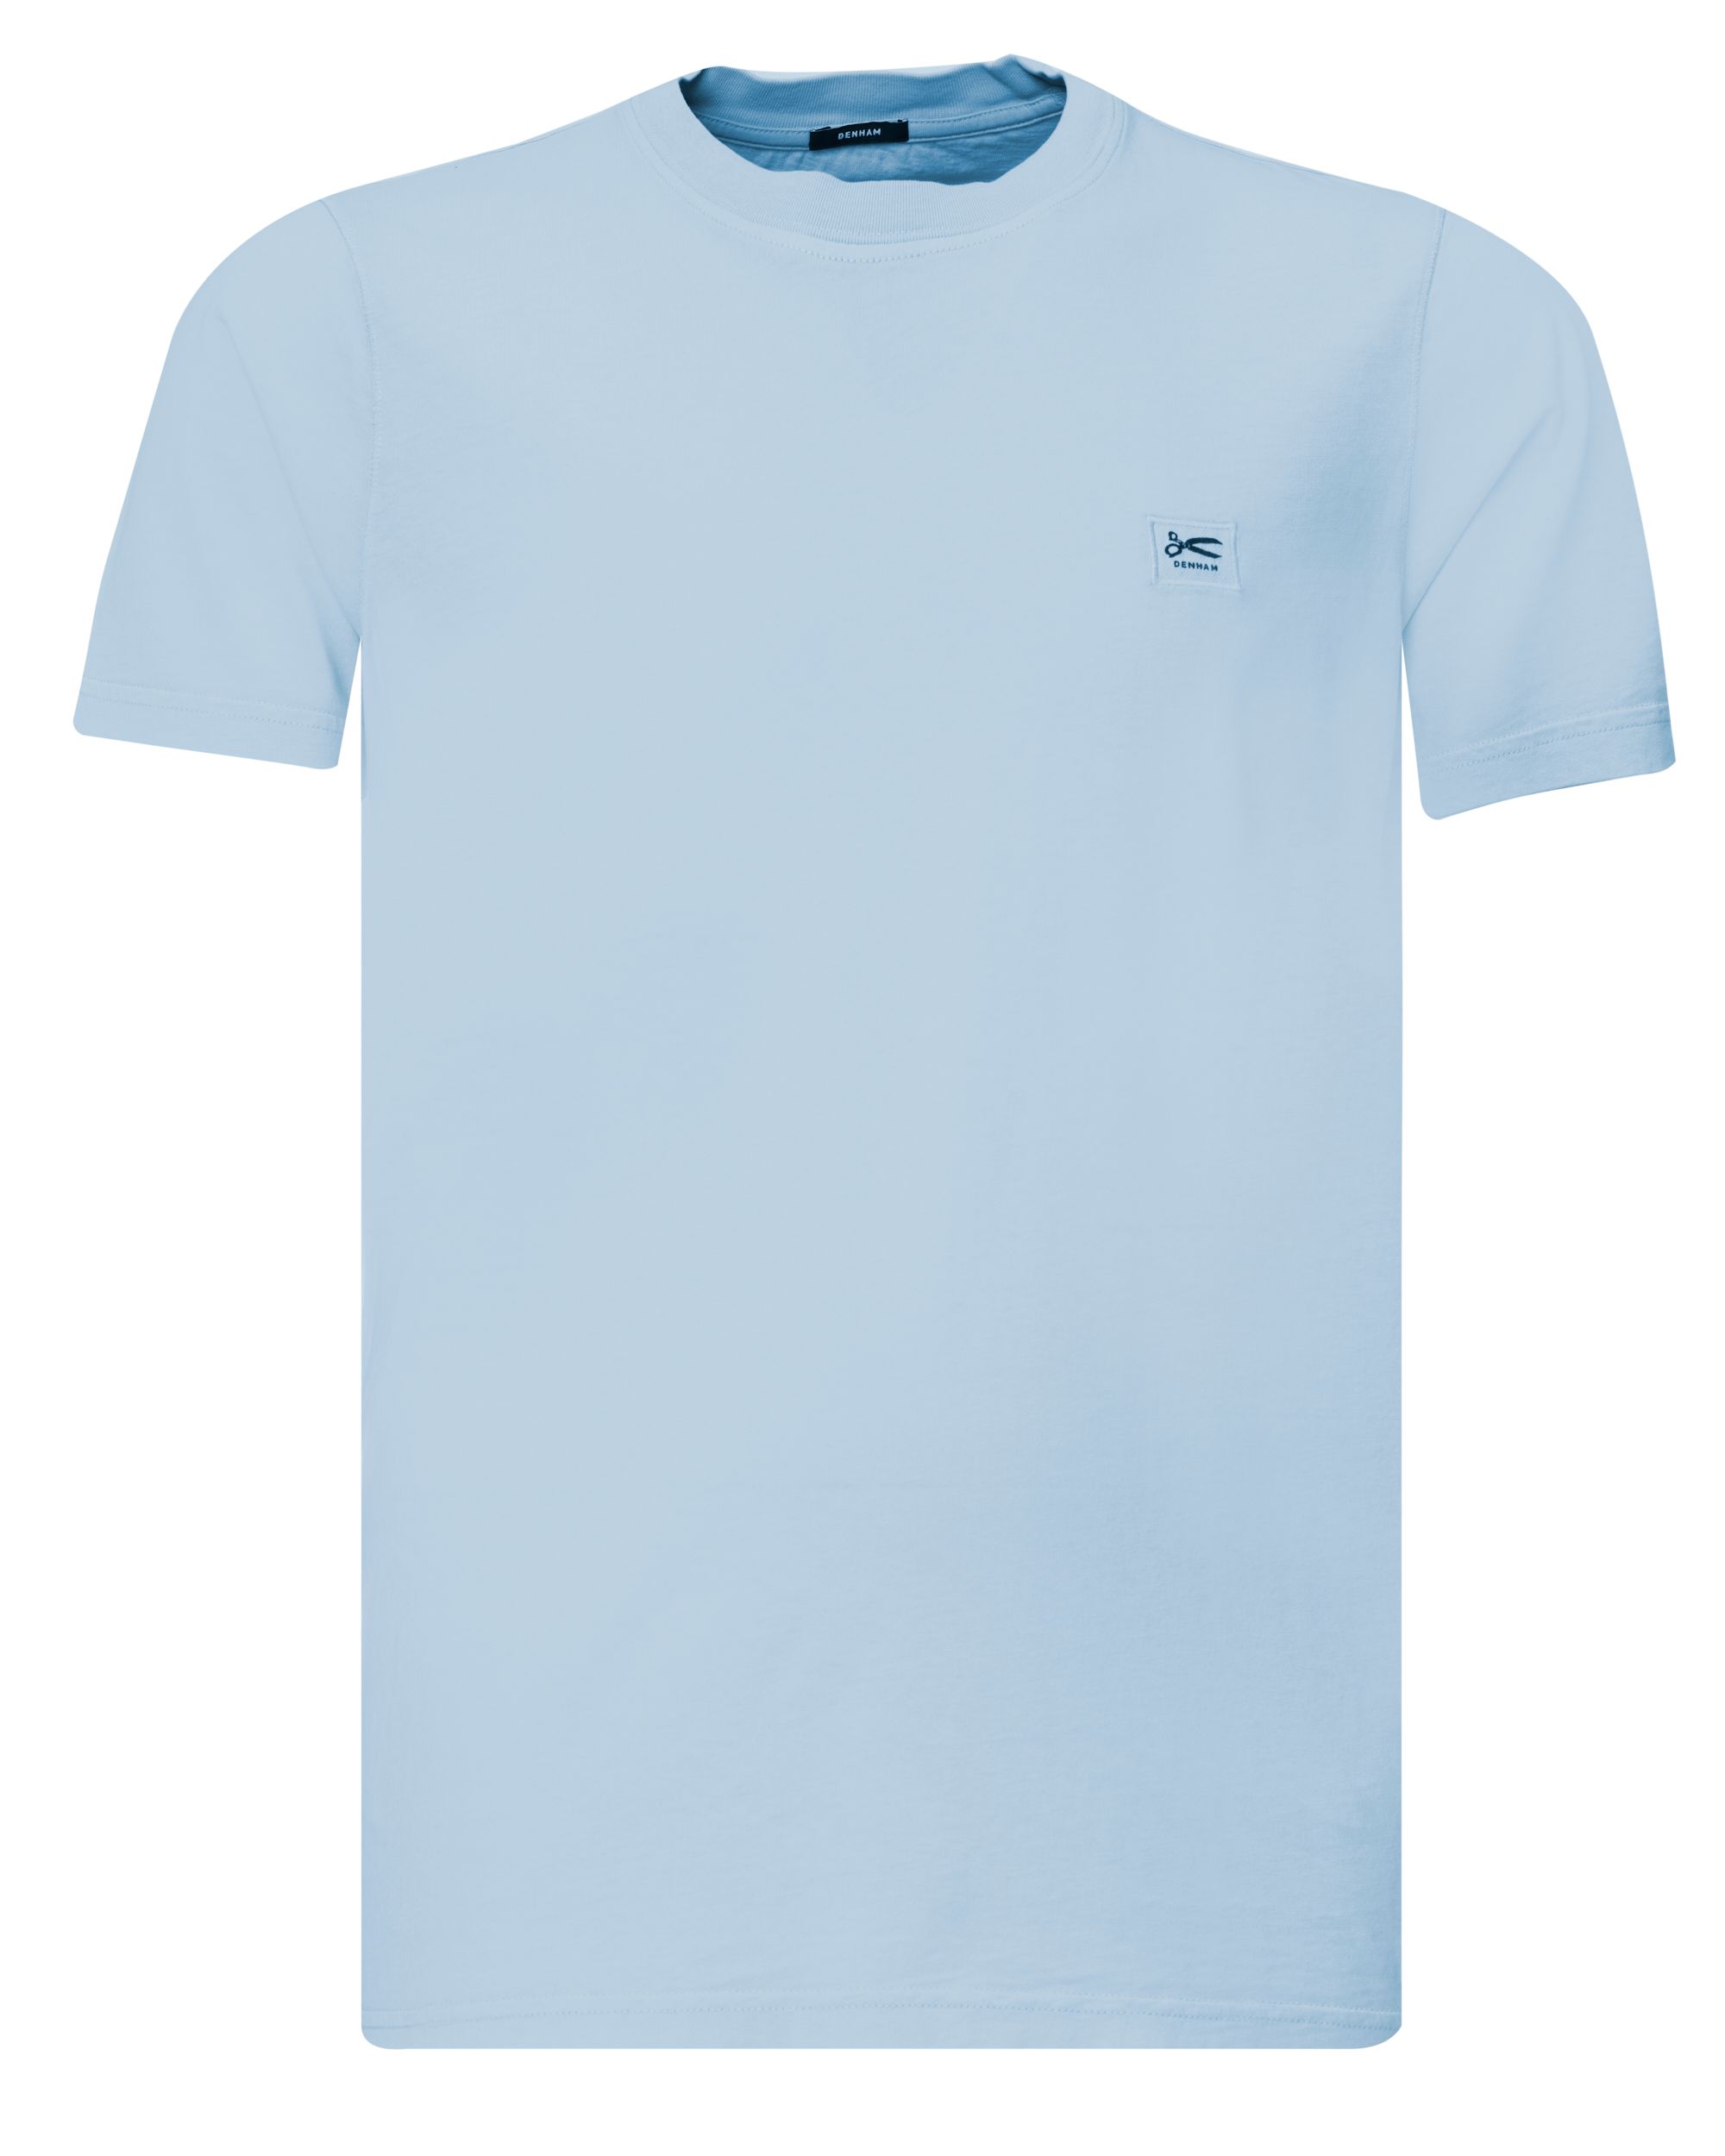 DENHAM Apllique T-shirt KM Blauw 080096-001-L